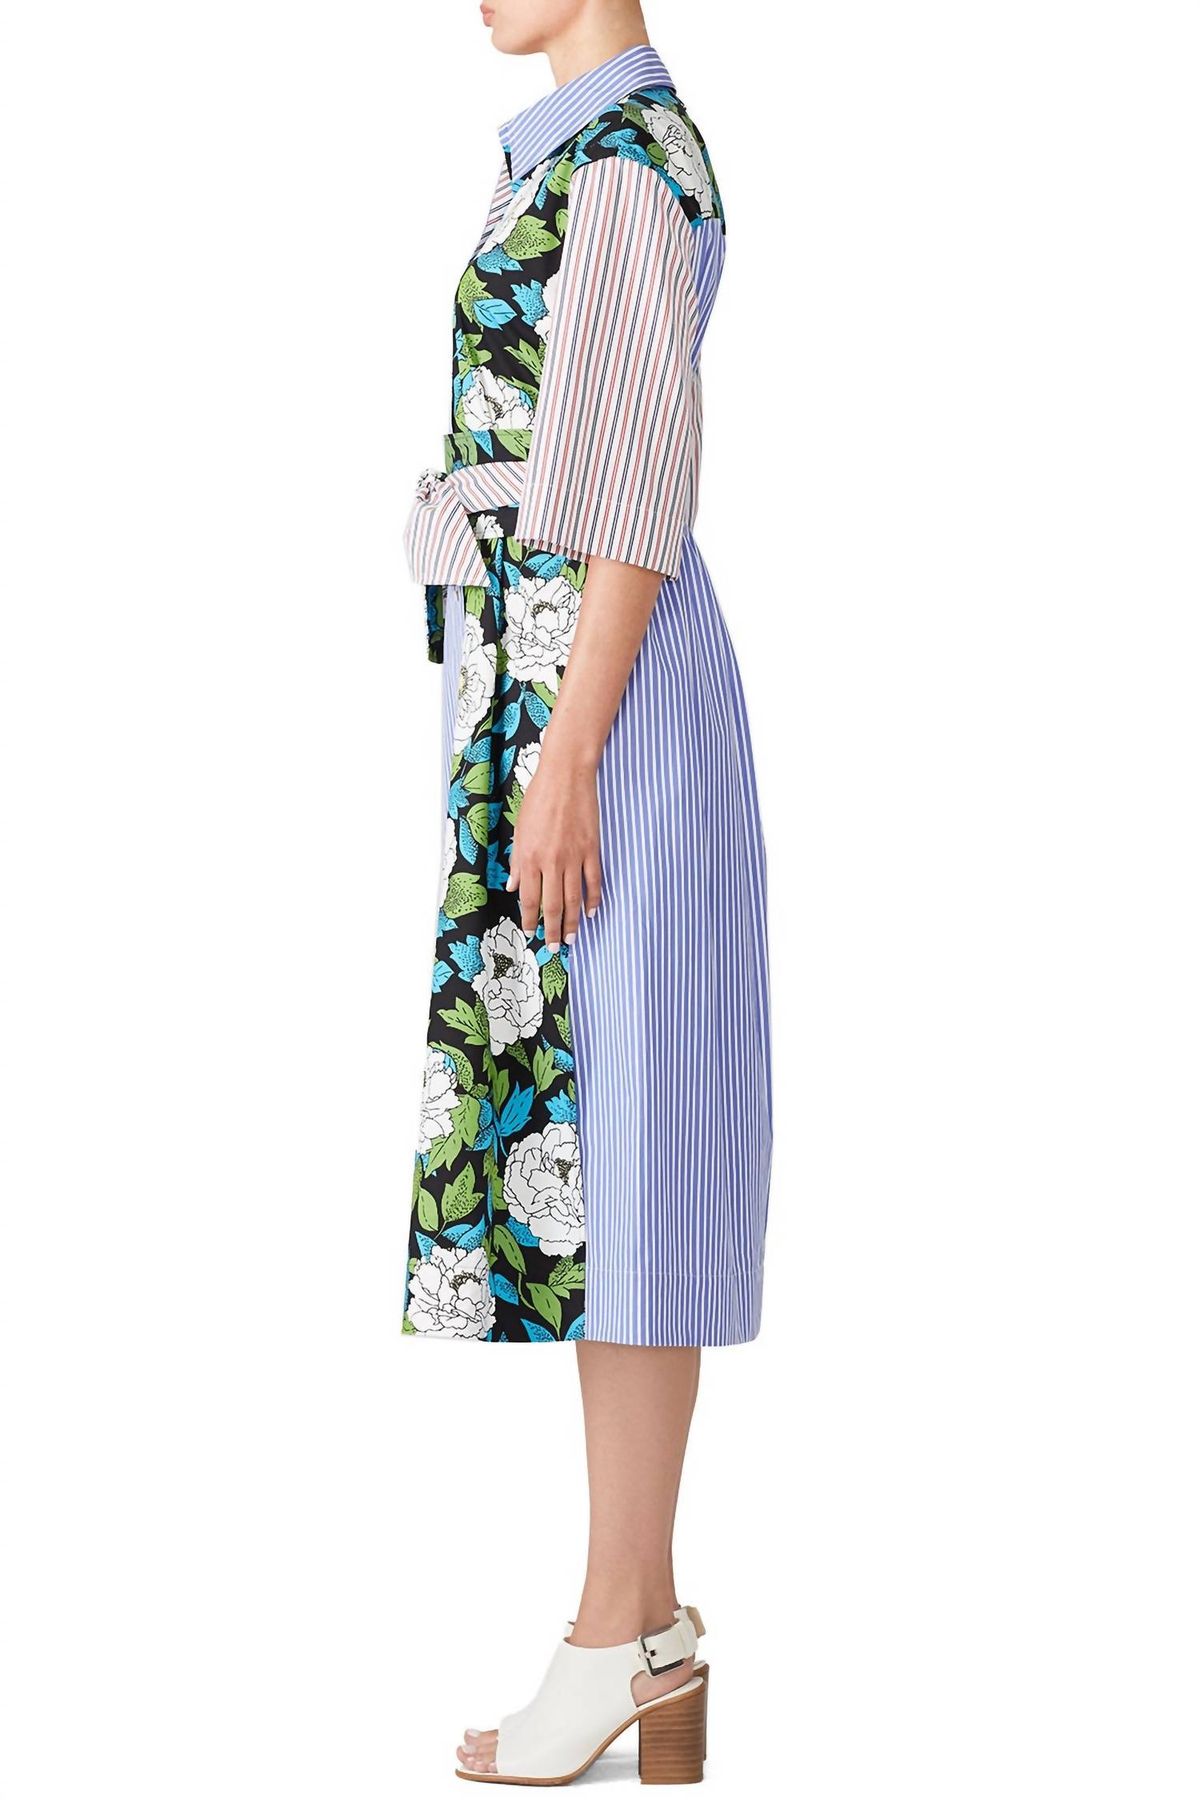 Style 1-3822214509-5673-1 Diane von Furstenberg Size XS High Neck Floral Blue Cocktail Dress on Queenly